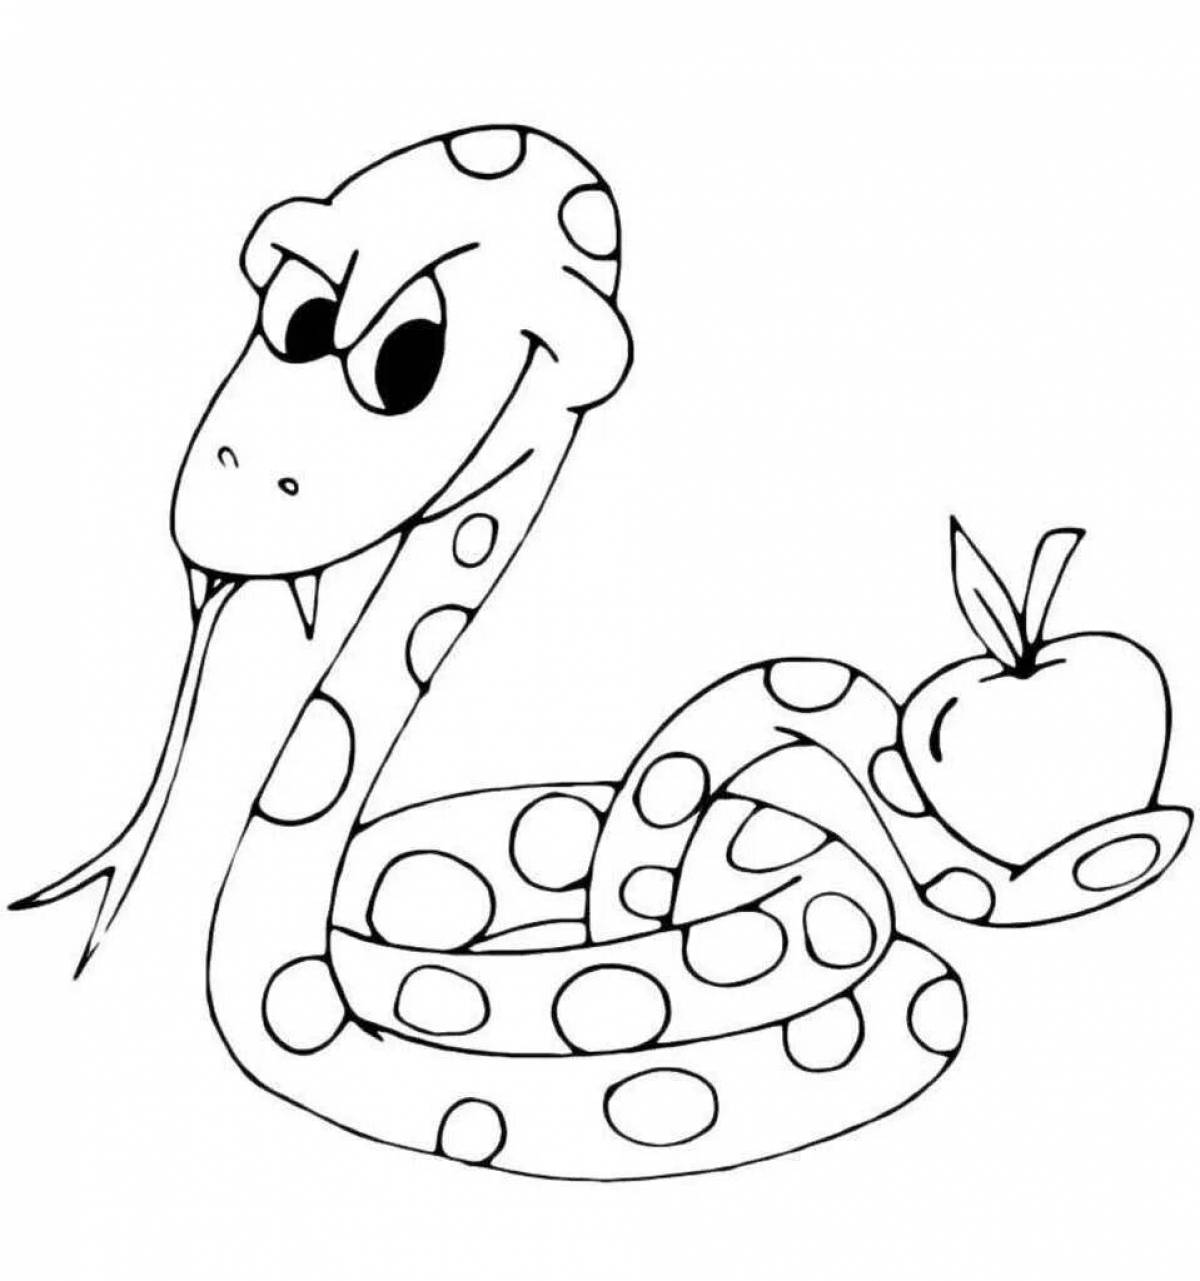 Раскраски змей распечатать. Змея раскраска. Змея раскраска для детей. Раскраски змей. Раскраска змеи для детей.